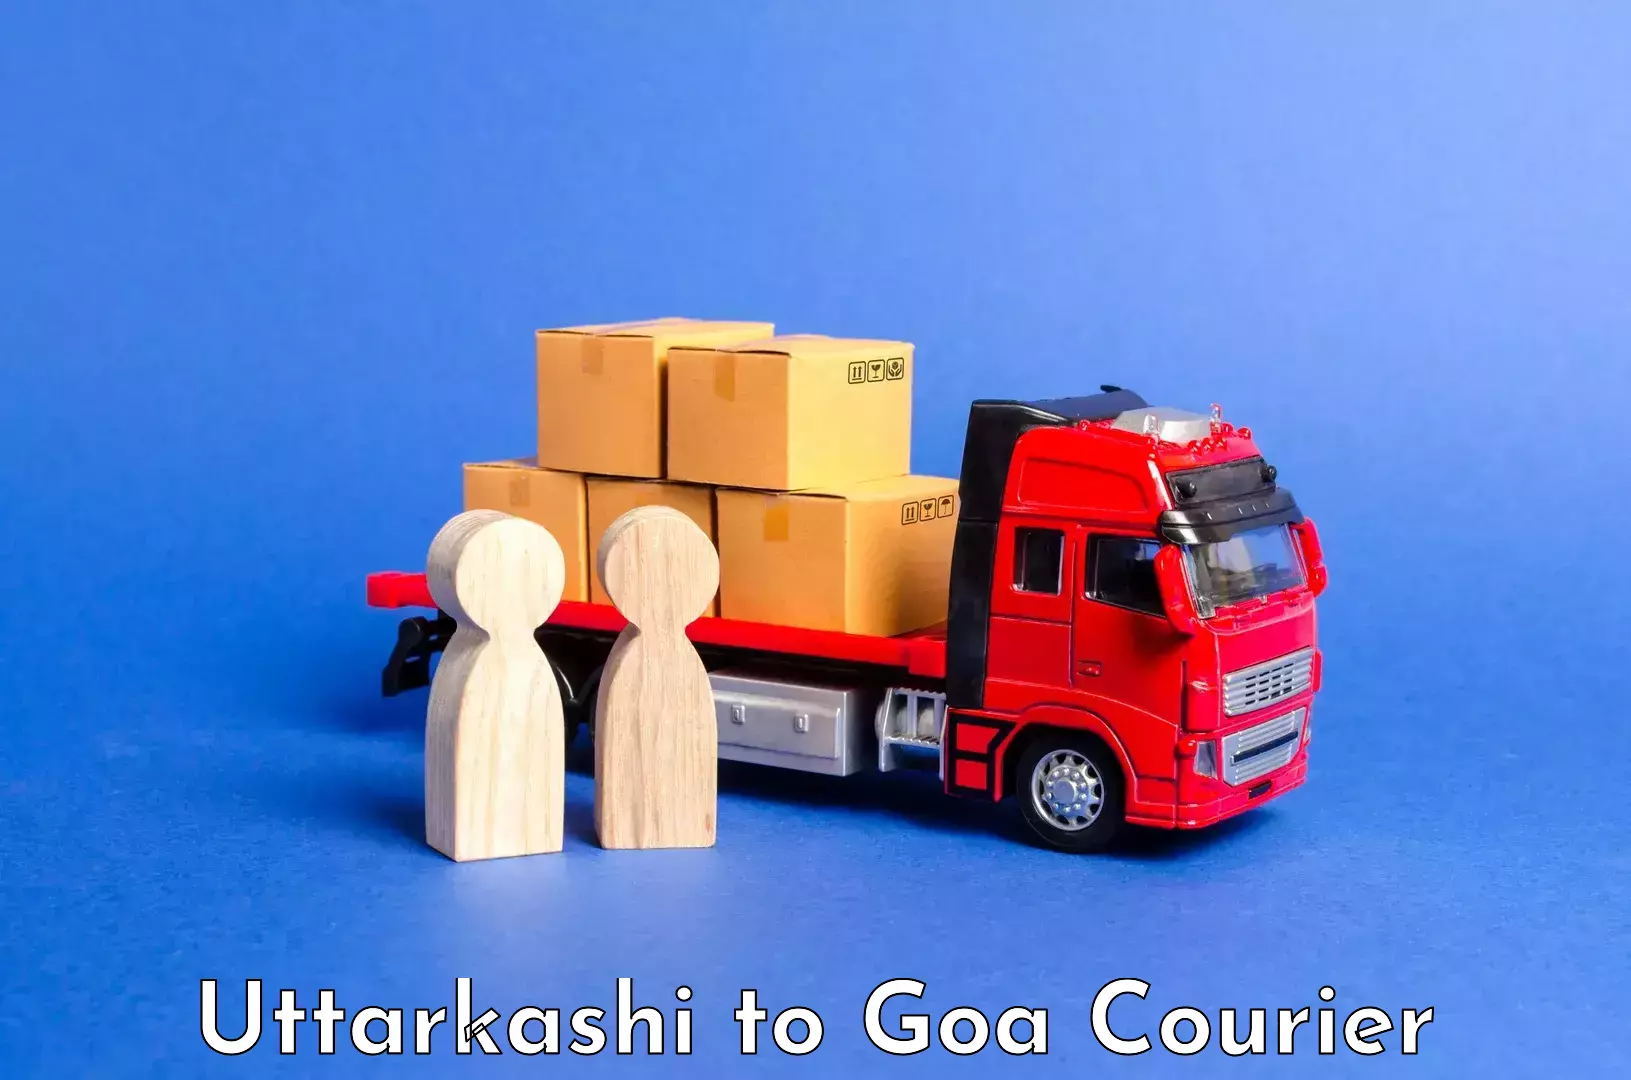 Luggage shipment specialists Uttarkashi to NIT Goa